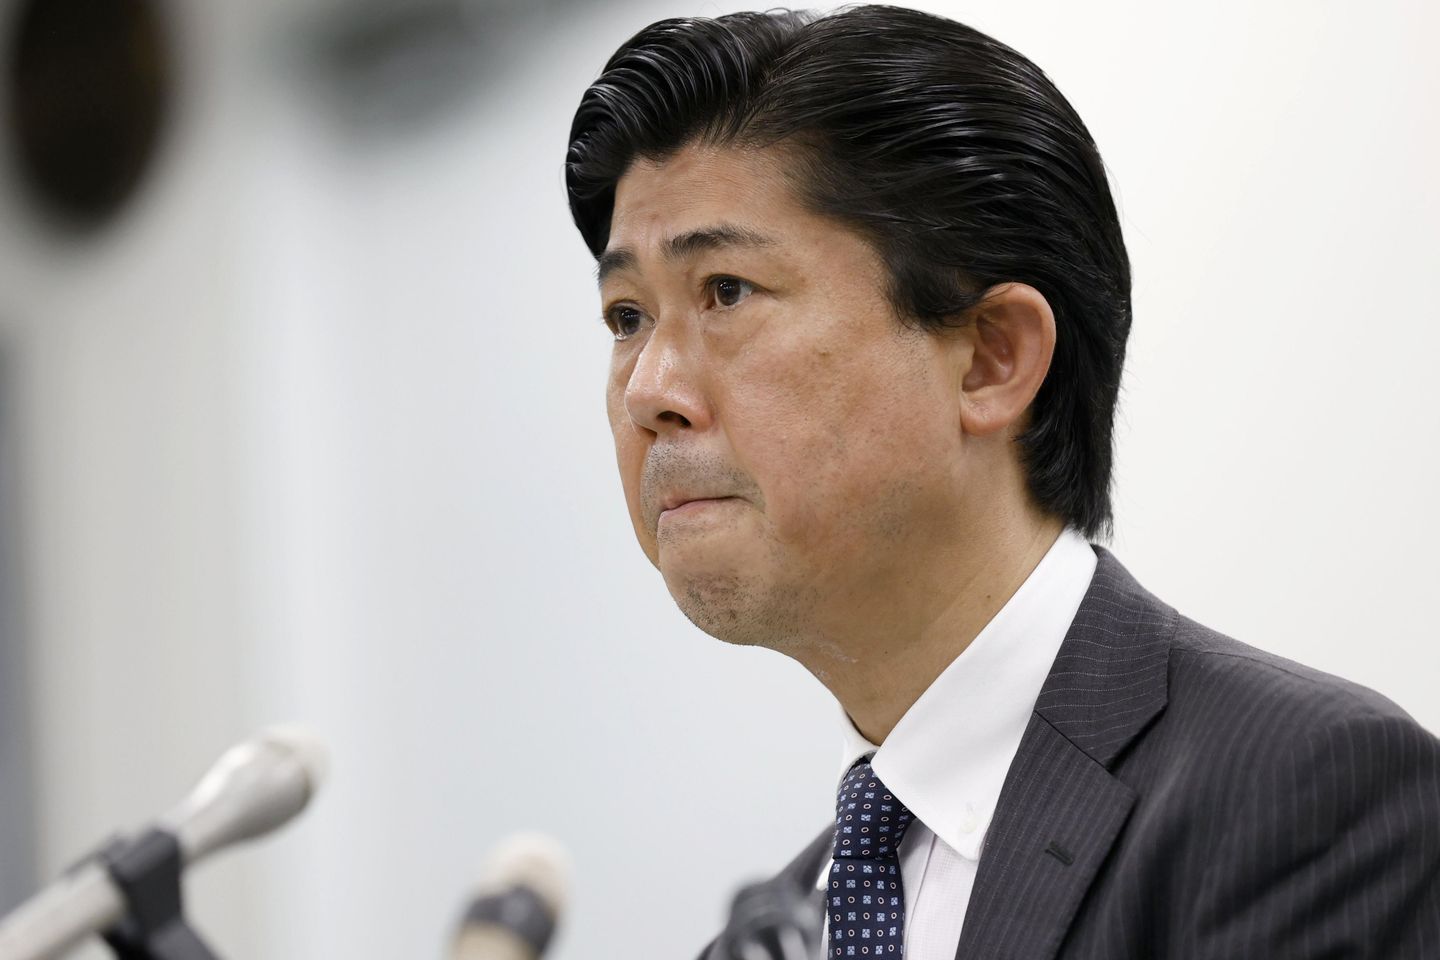 Nara Polis Şefi güvenlik başarısızlığını kabul etti, Shinzo Abe'nin ölümünün sorumluluğunu üstlendi